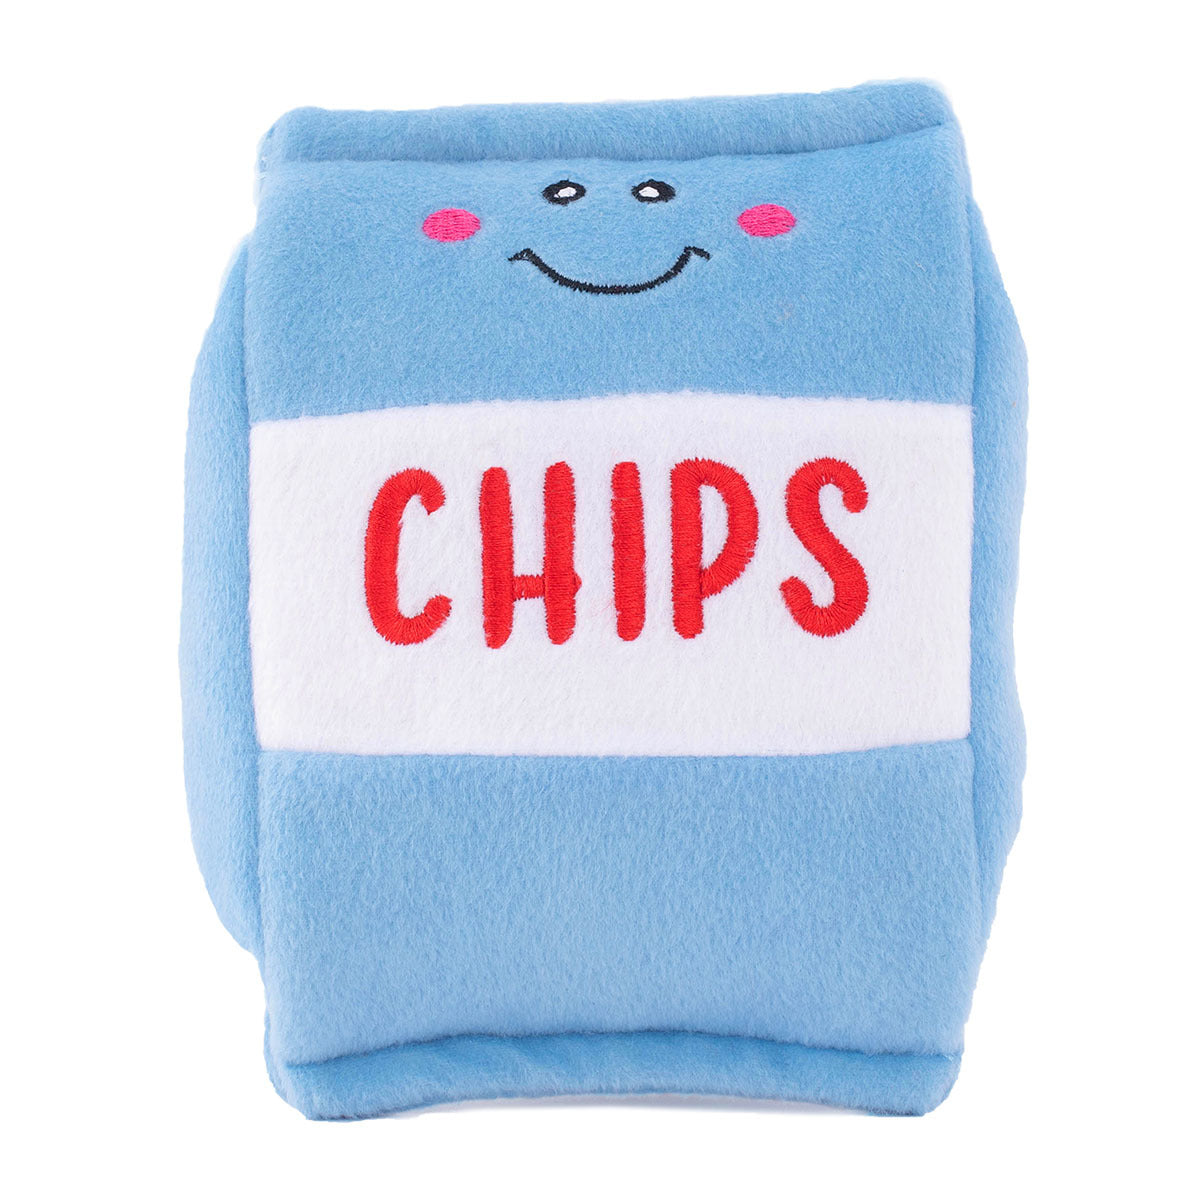 ZIPPY PAWS - NomNomz Chips Plush Toy